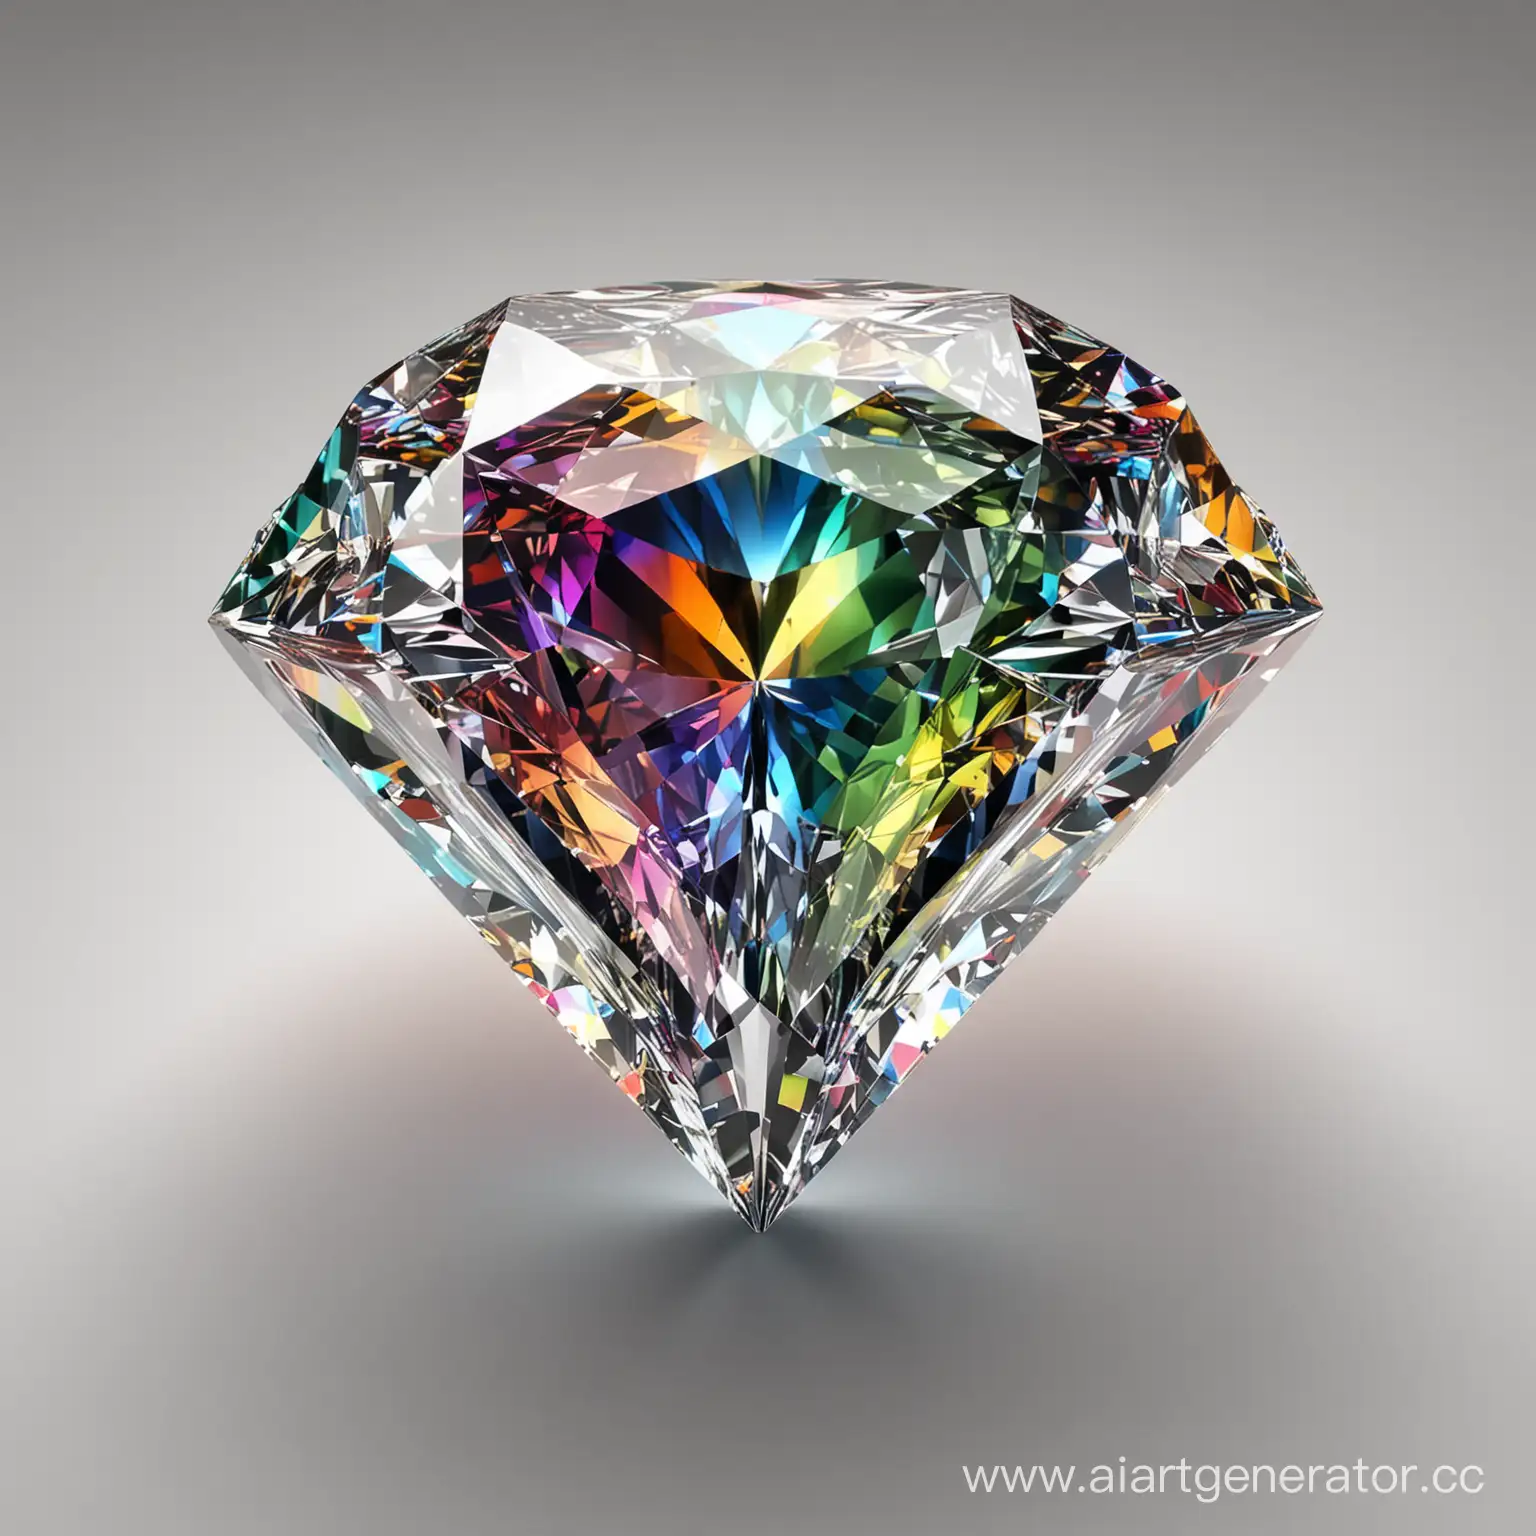 Красивый алмаз переливающийся радугой на гранях, люкс, богато, в центре заметная надпись Excelsior, 